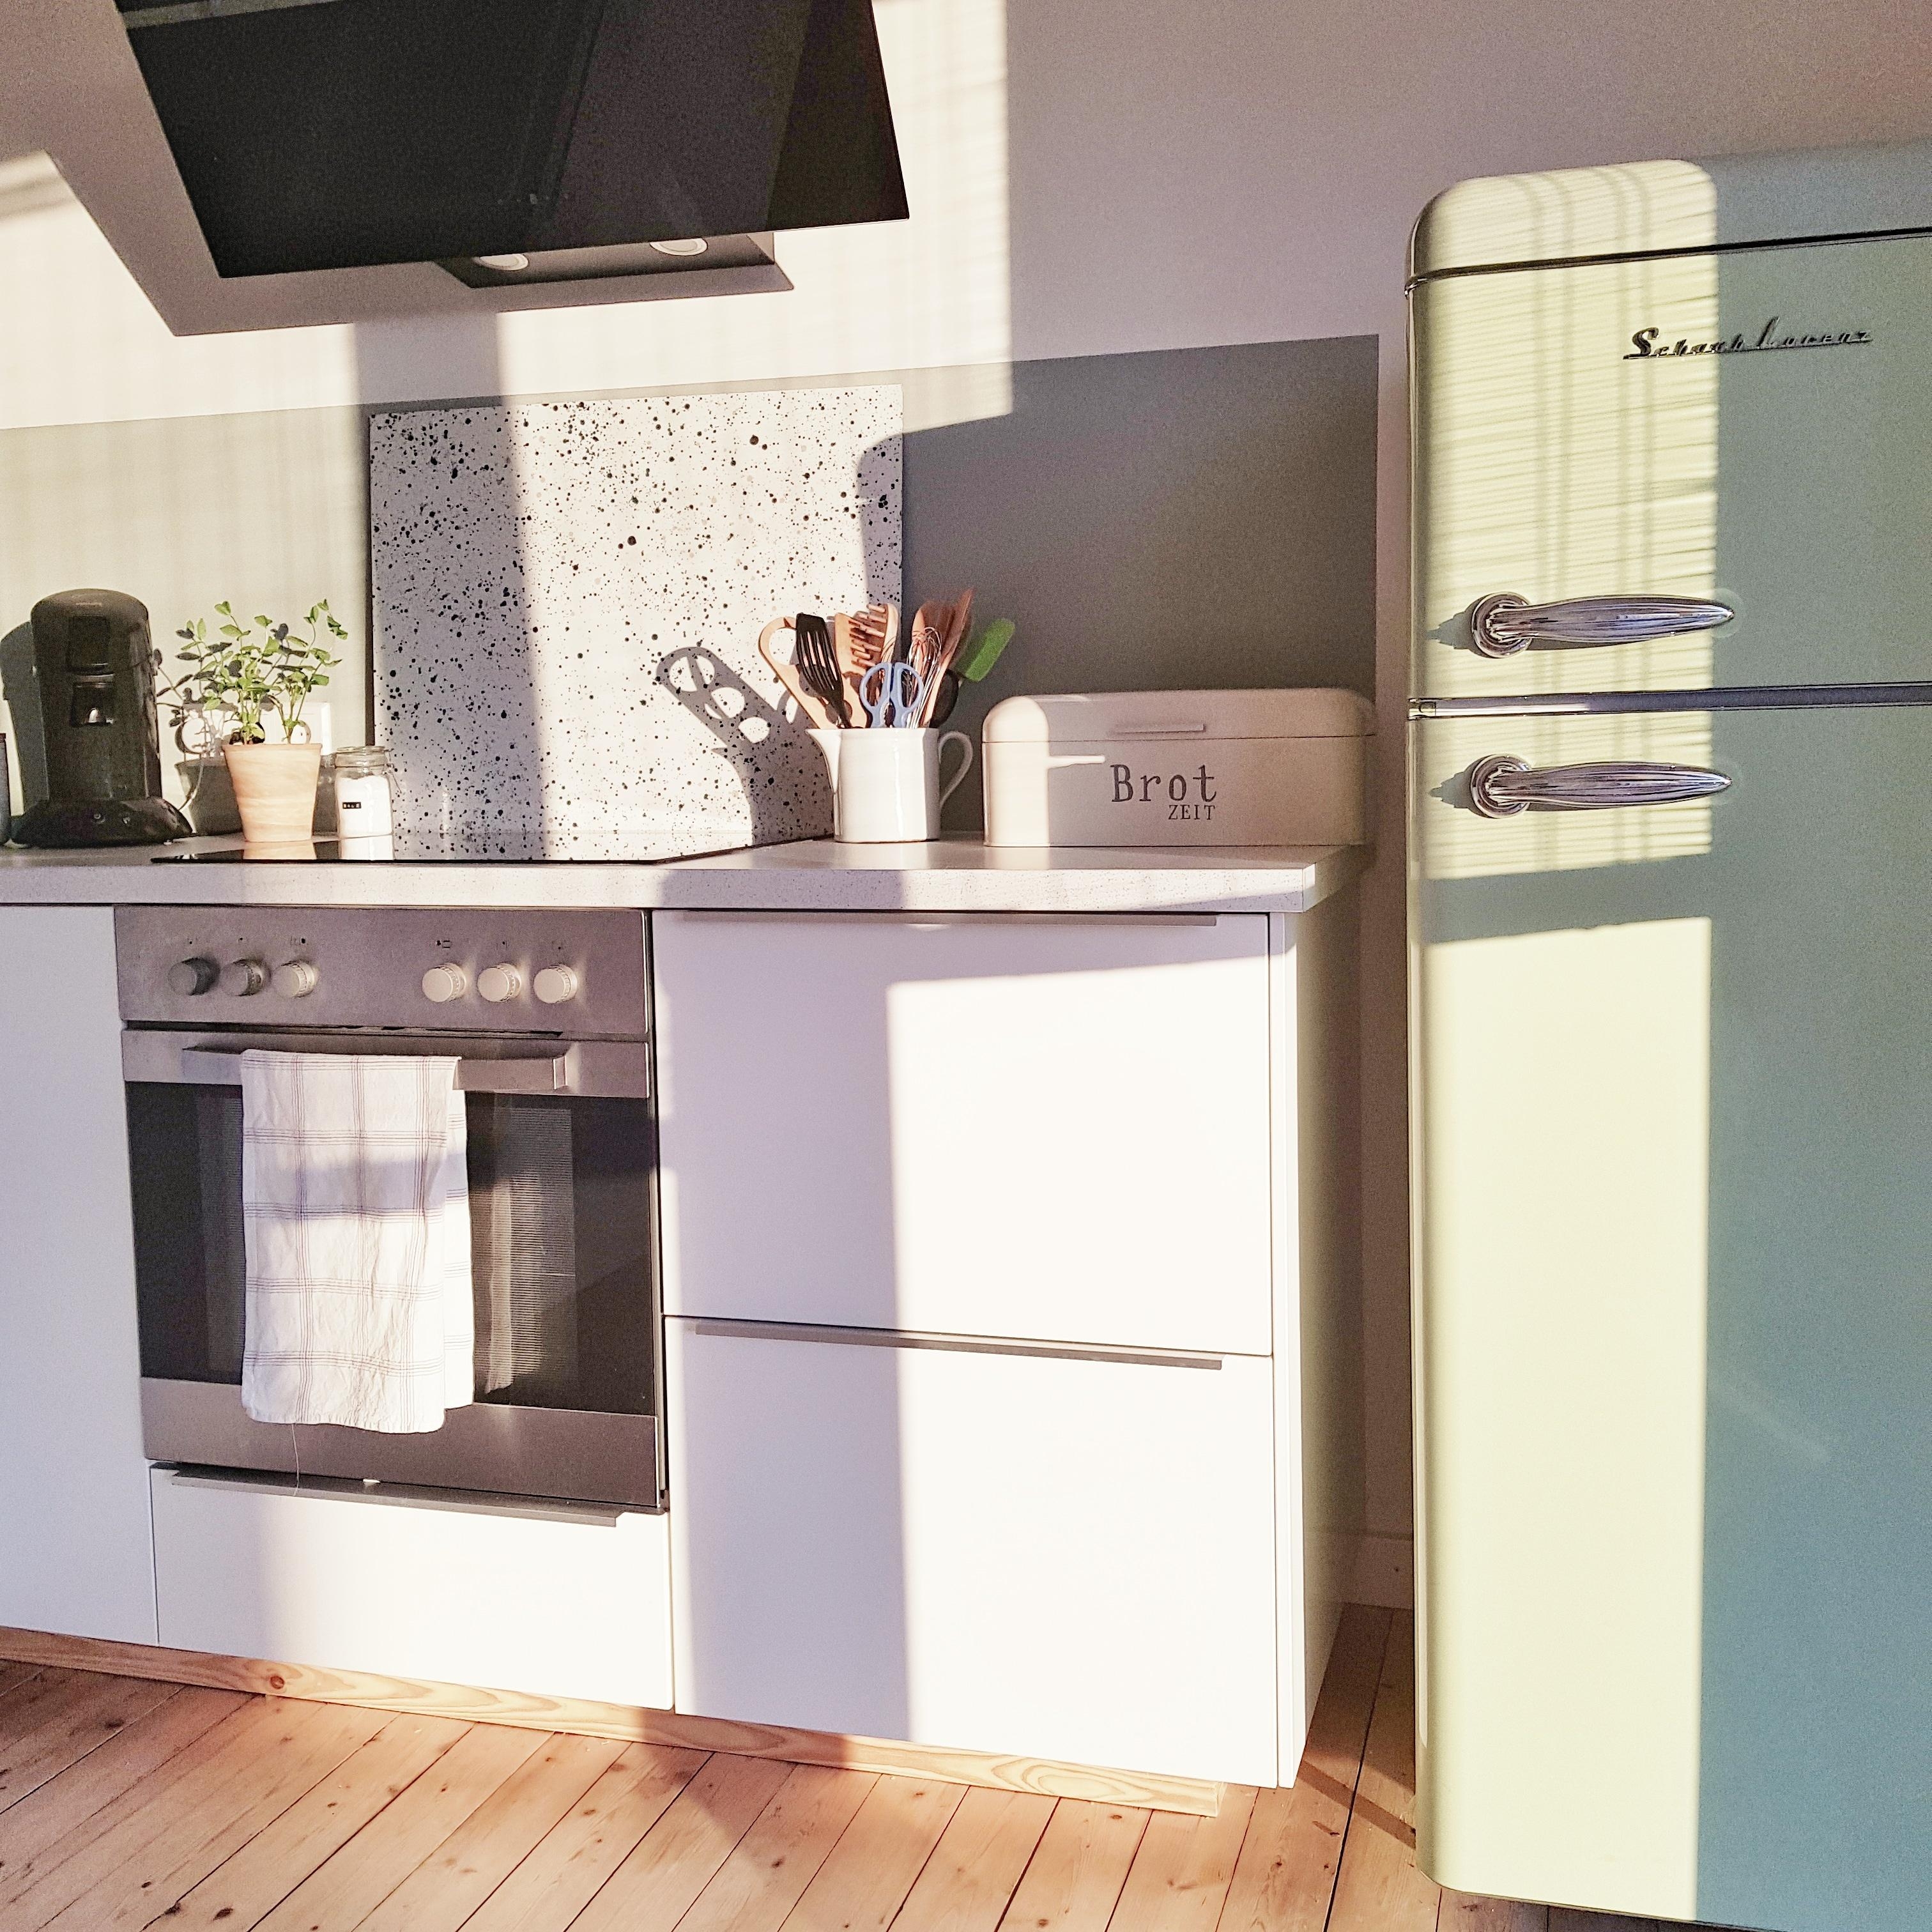 Die ersten Sonnenstrahlen am Tag 🌞
#kleineküche #kitchen #altbauliebe #sun #dielenboden #retro